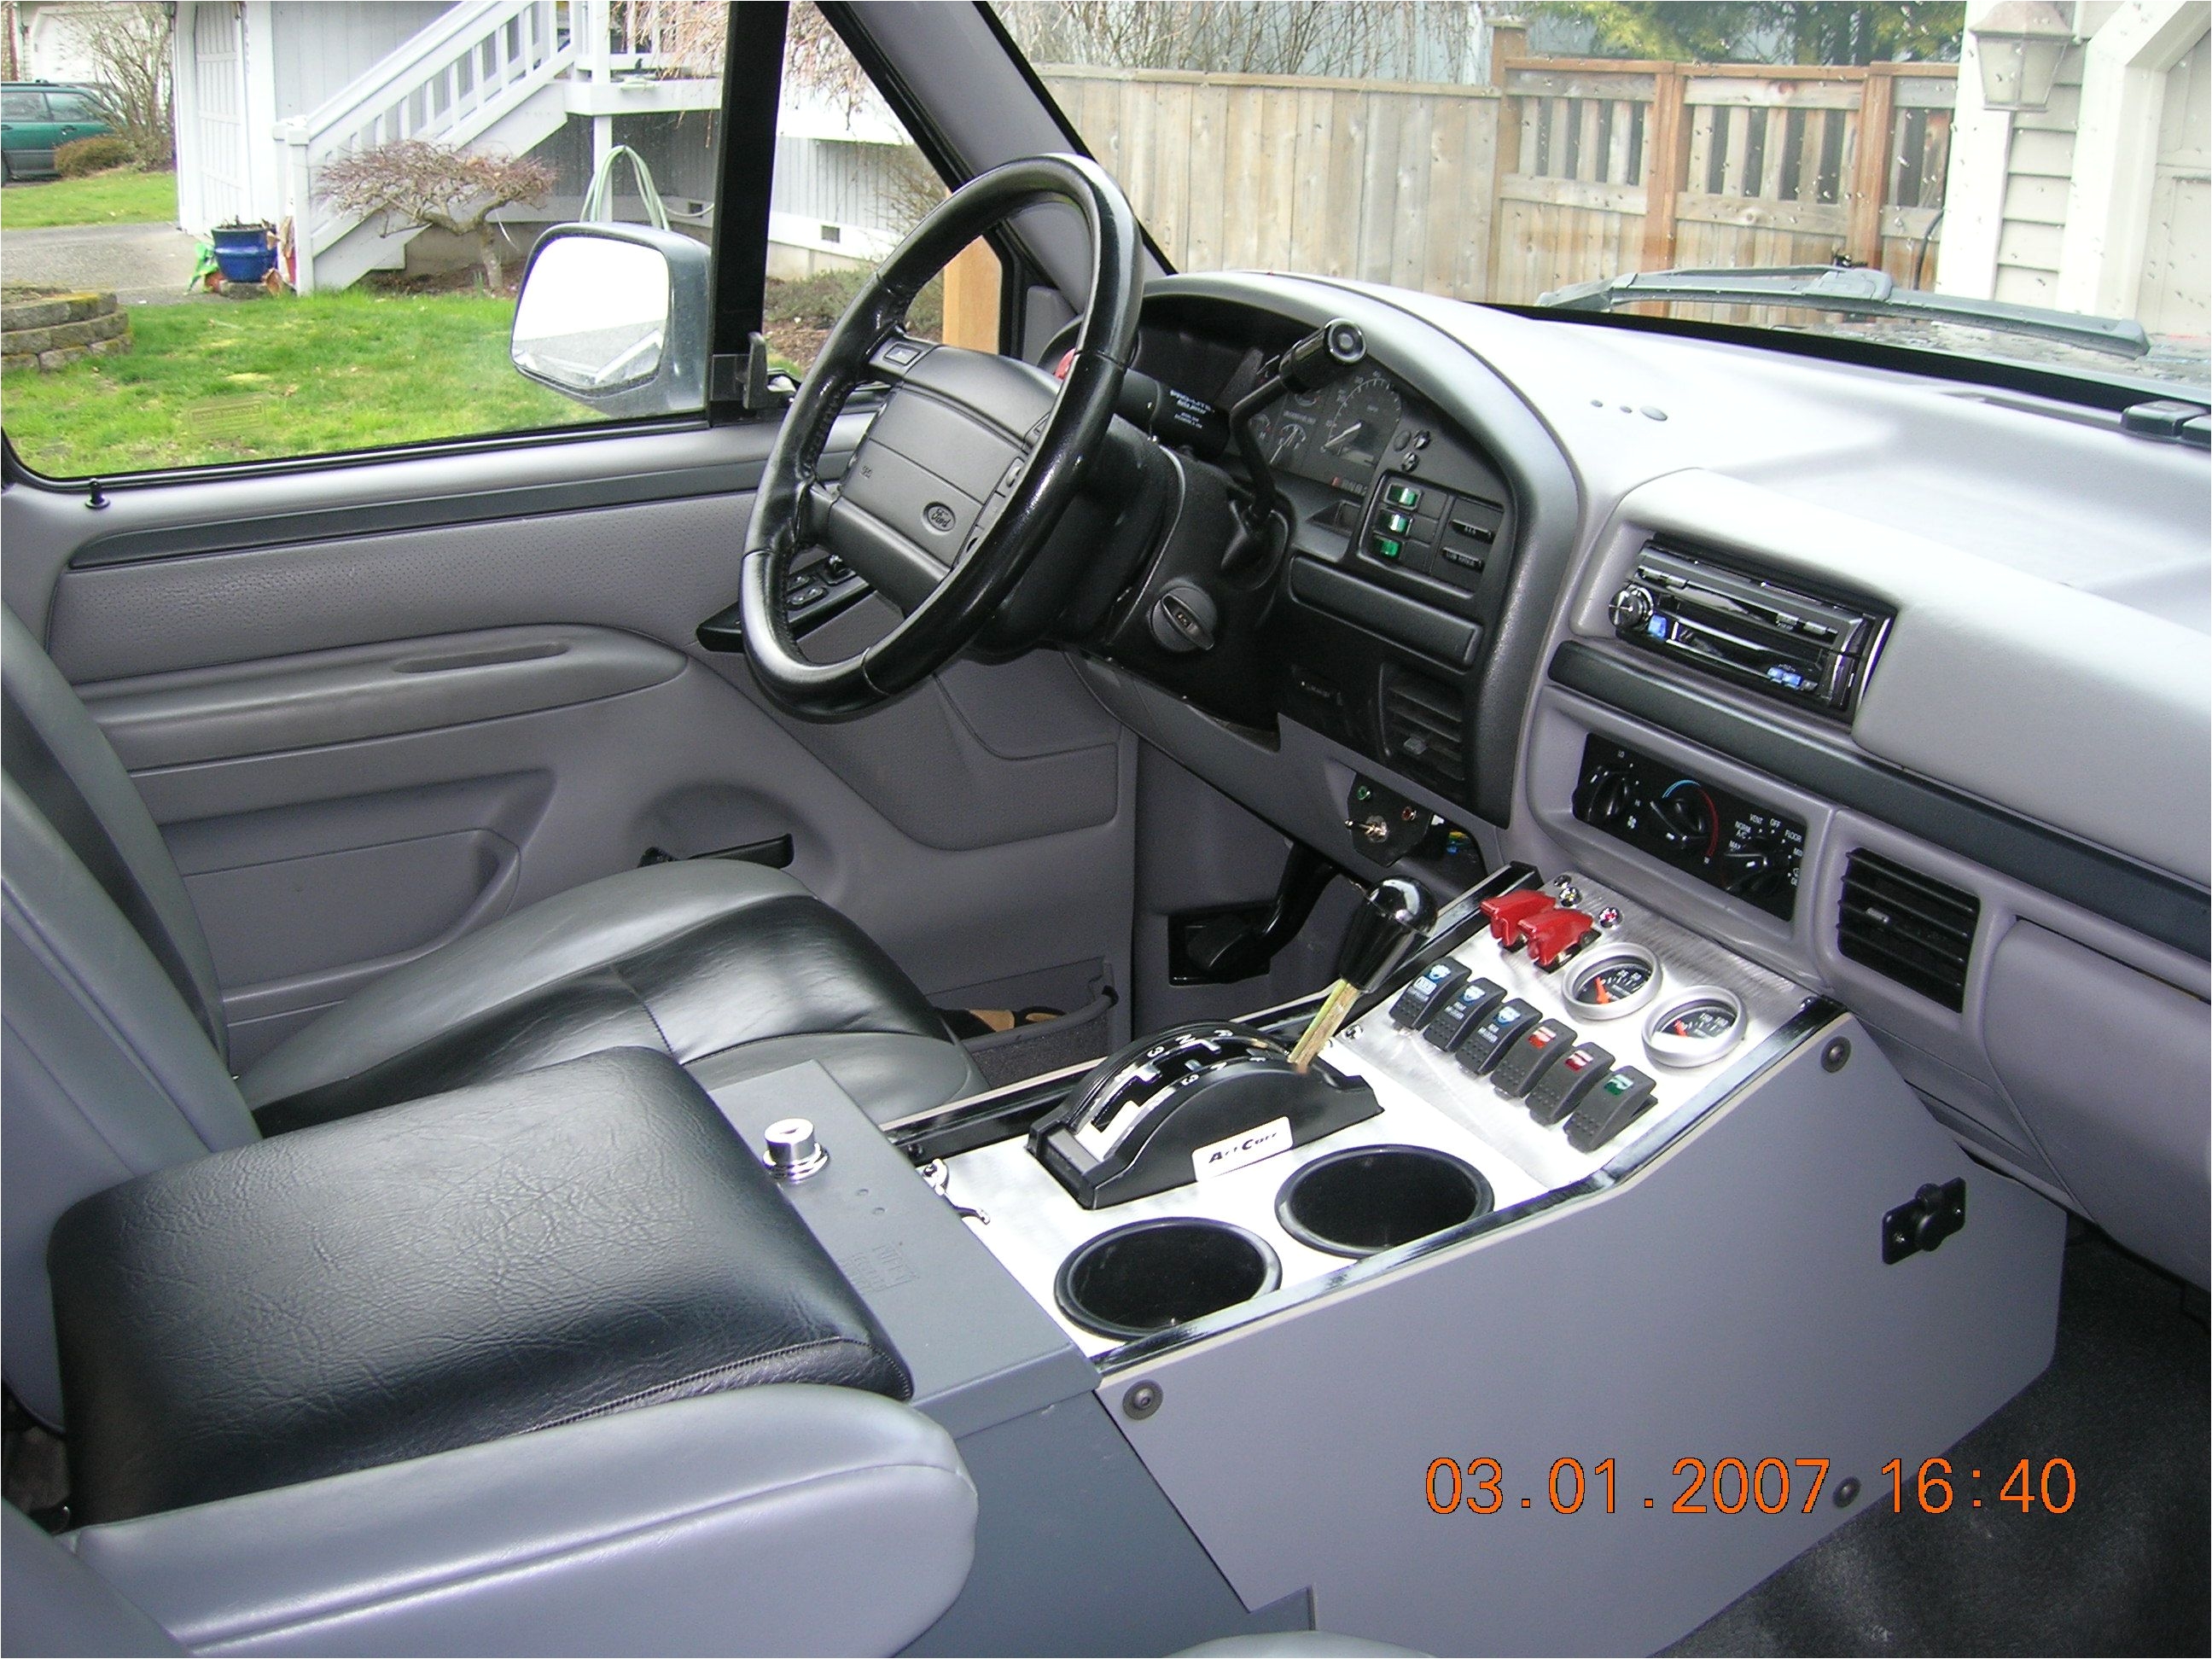 1996 ford bronco interior diymid com